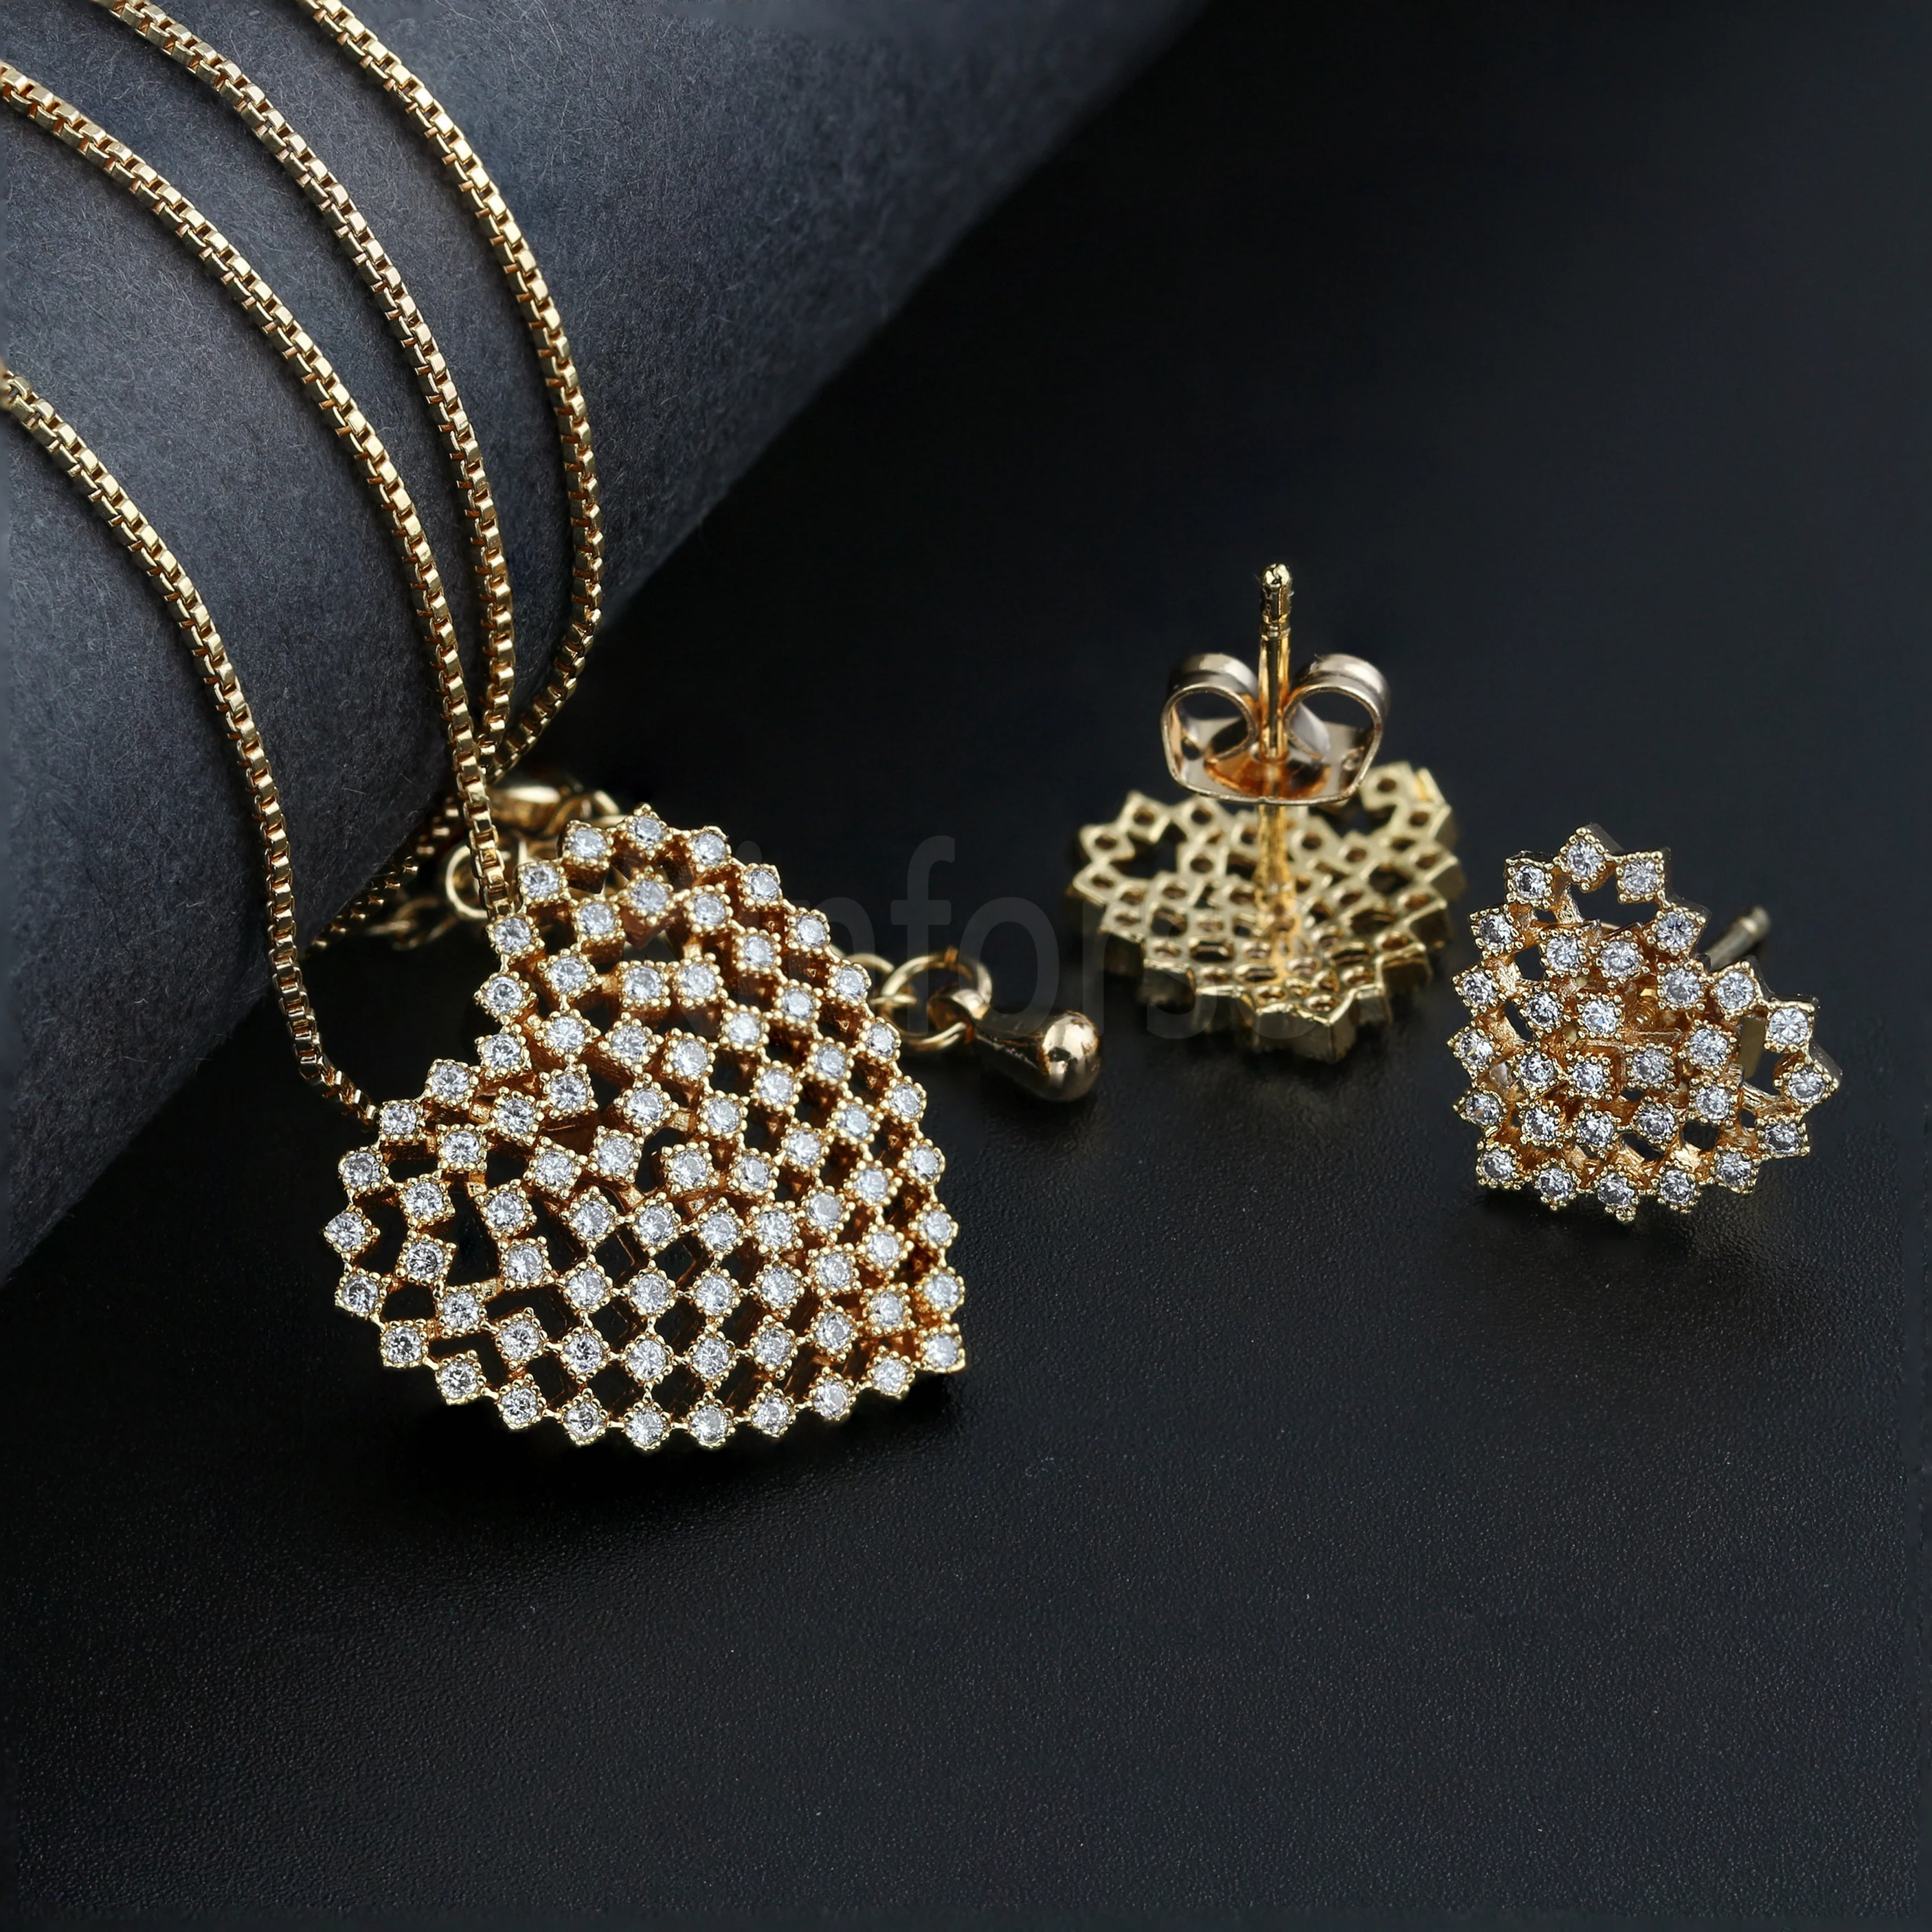 Kinforse ювелирный набор в виде сердца Очаровательное ожерелье с кулоном из